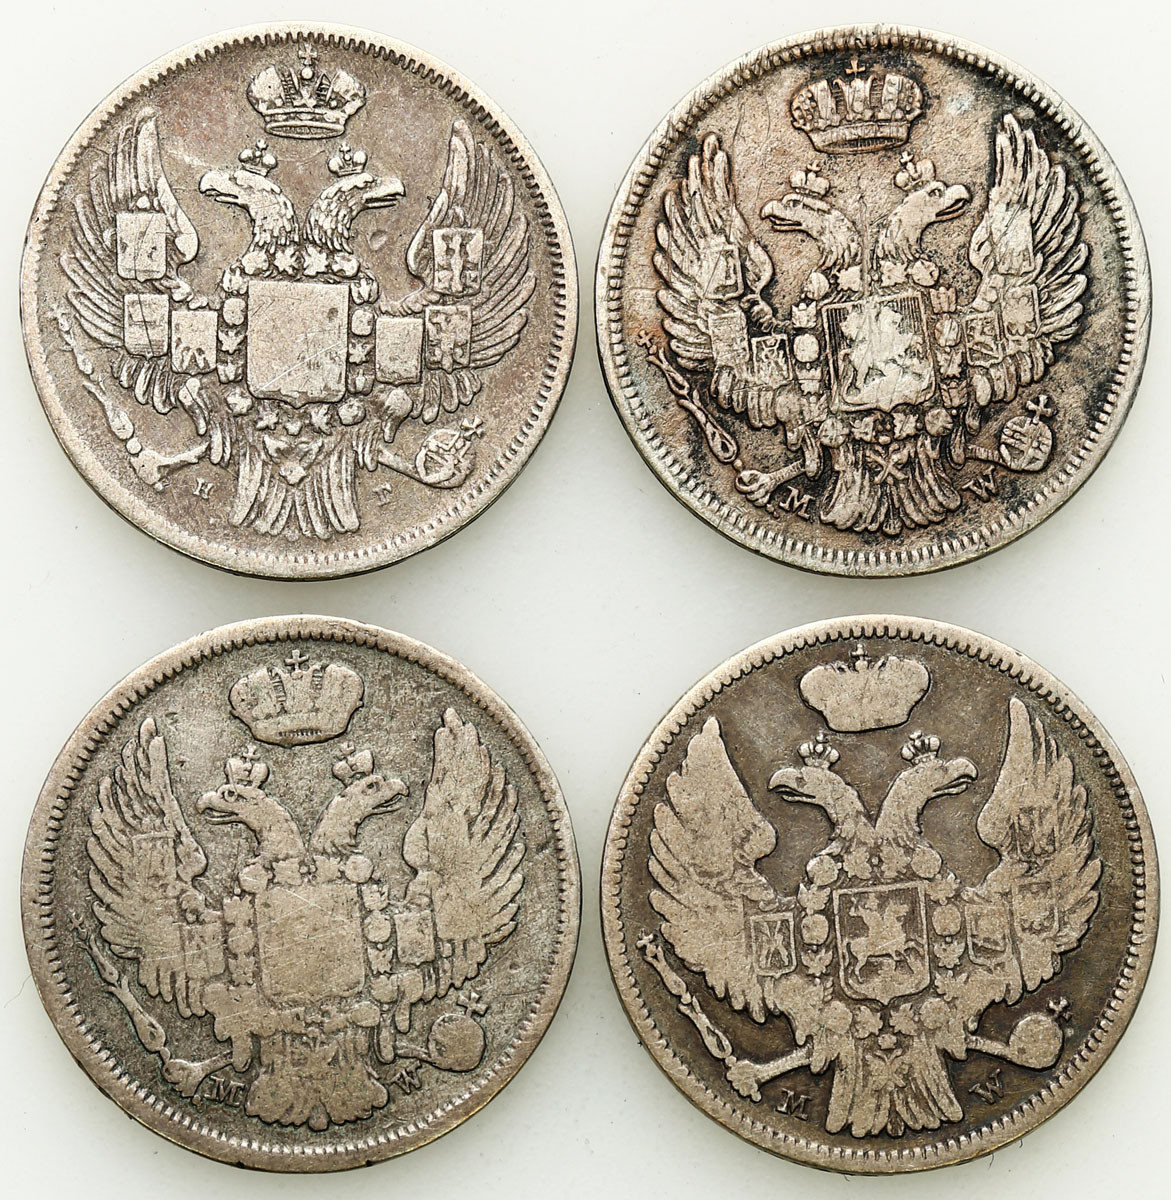 Polska XIX w./Rosja, Mikołaj I. 15 kopiejek = 1 złoty 1833-1836 MW i НГ, Warszawa i Petersburg, zestaw 4 monet